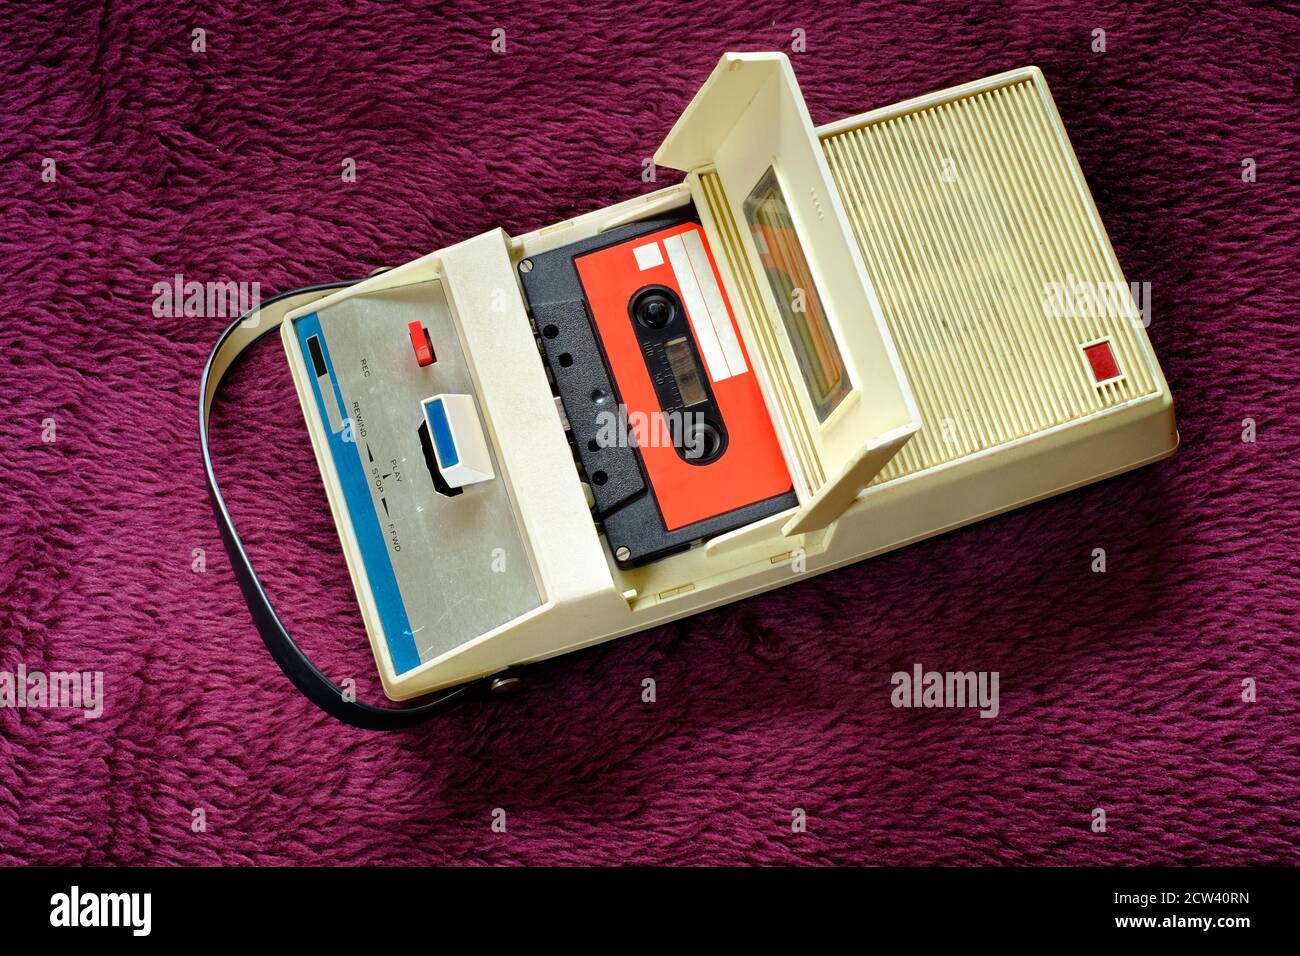 cinta de casete vintage y cinta de casete de los años setenta, equipo de audio vintage en pleno funcionamiento Foto de stock